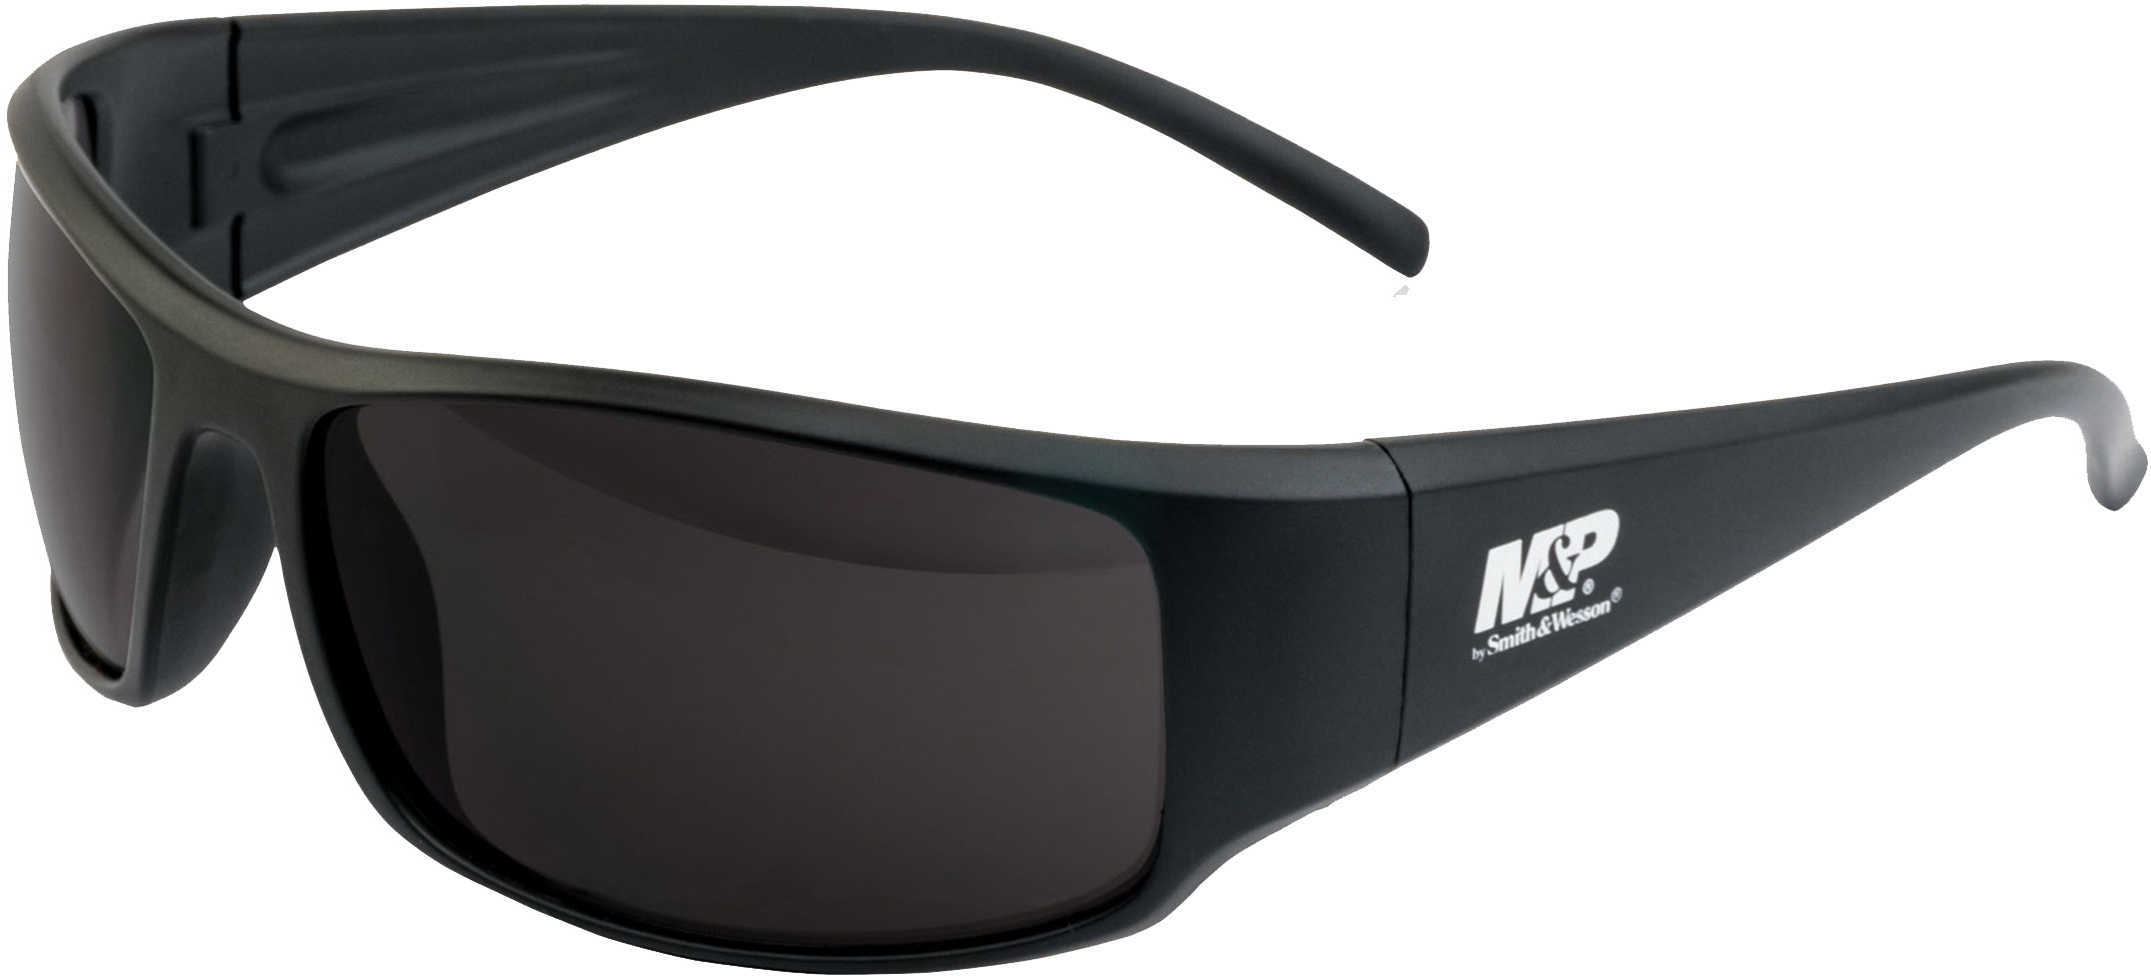 M&P Thunderbolt Black Frame/Smoke Lens Glasses